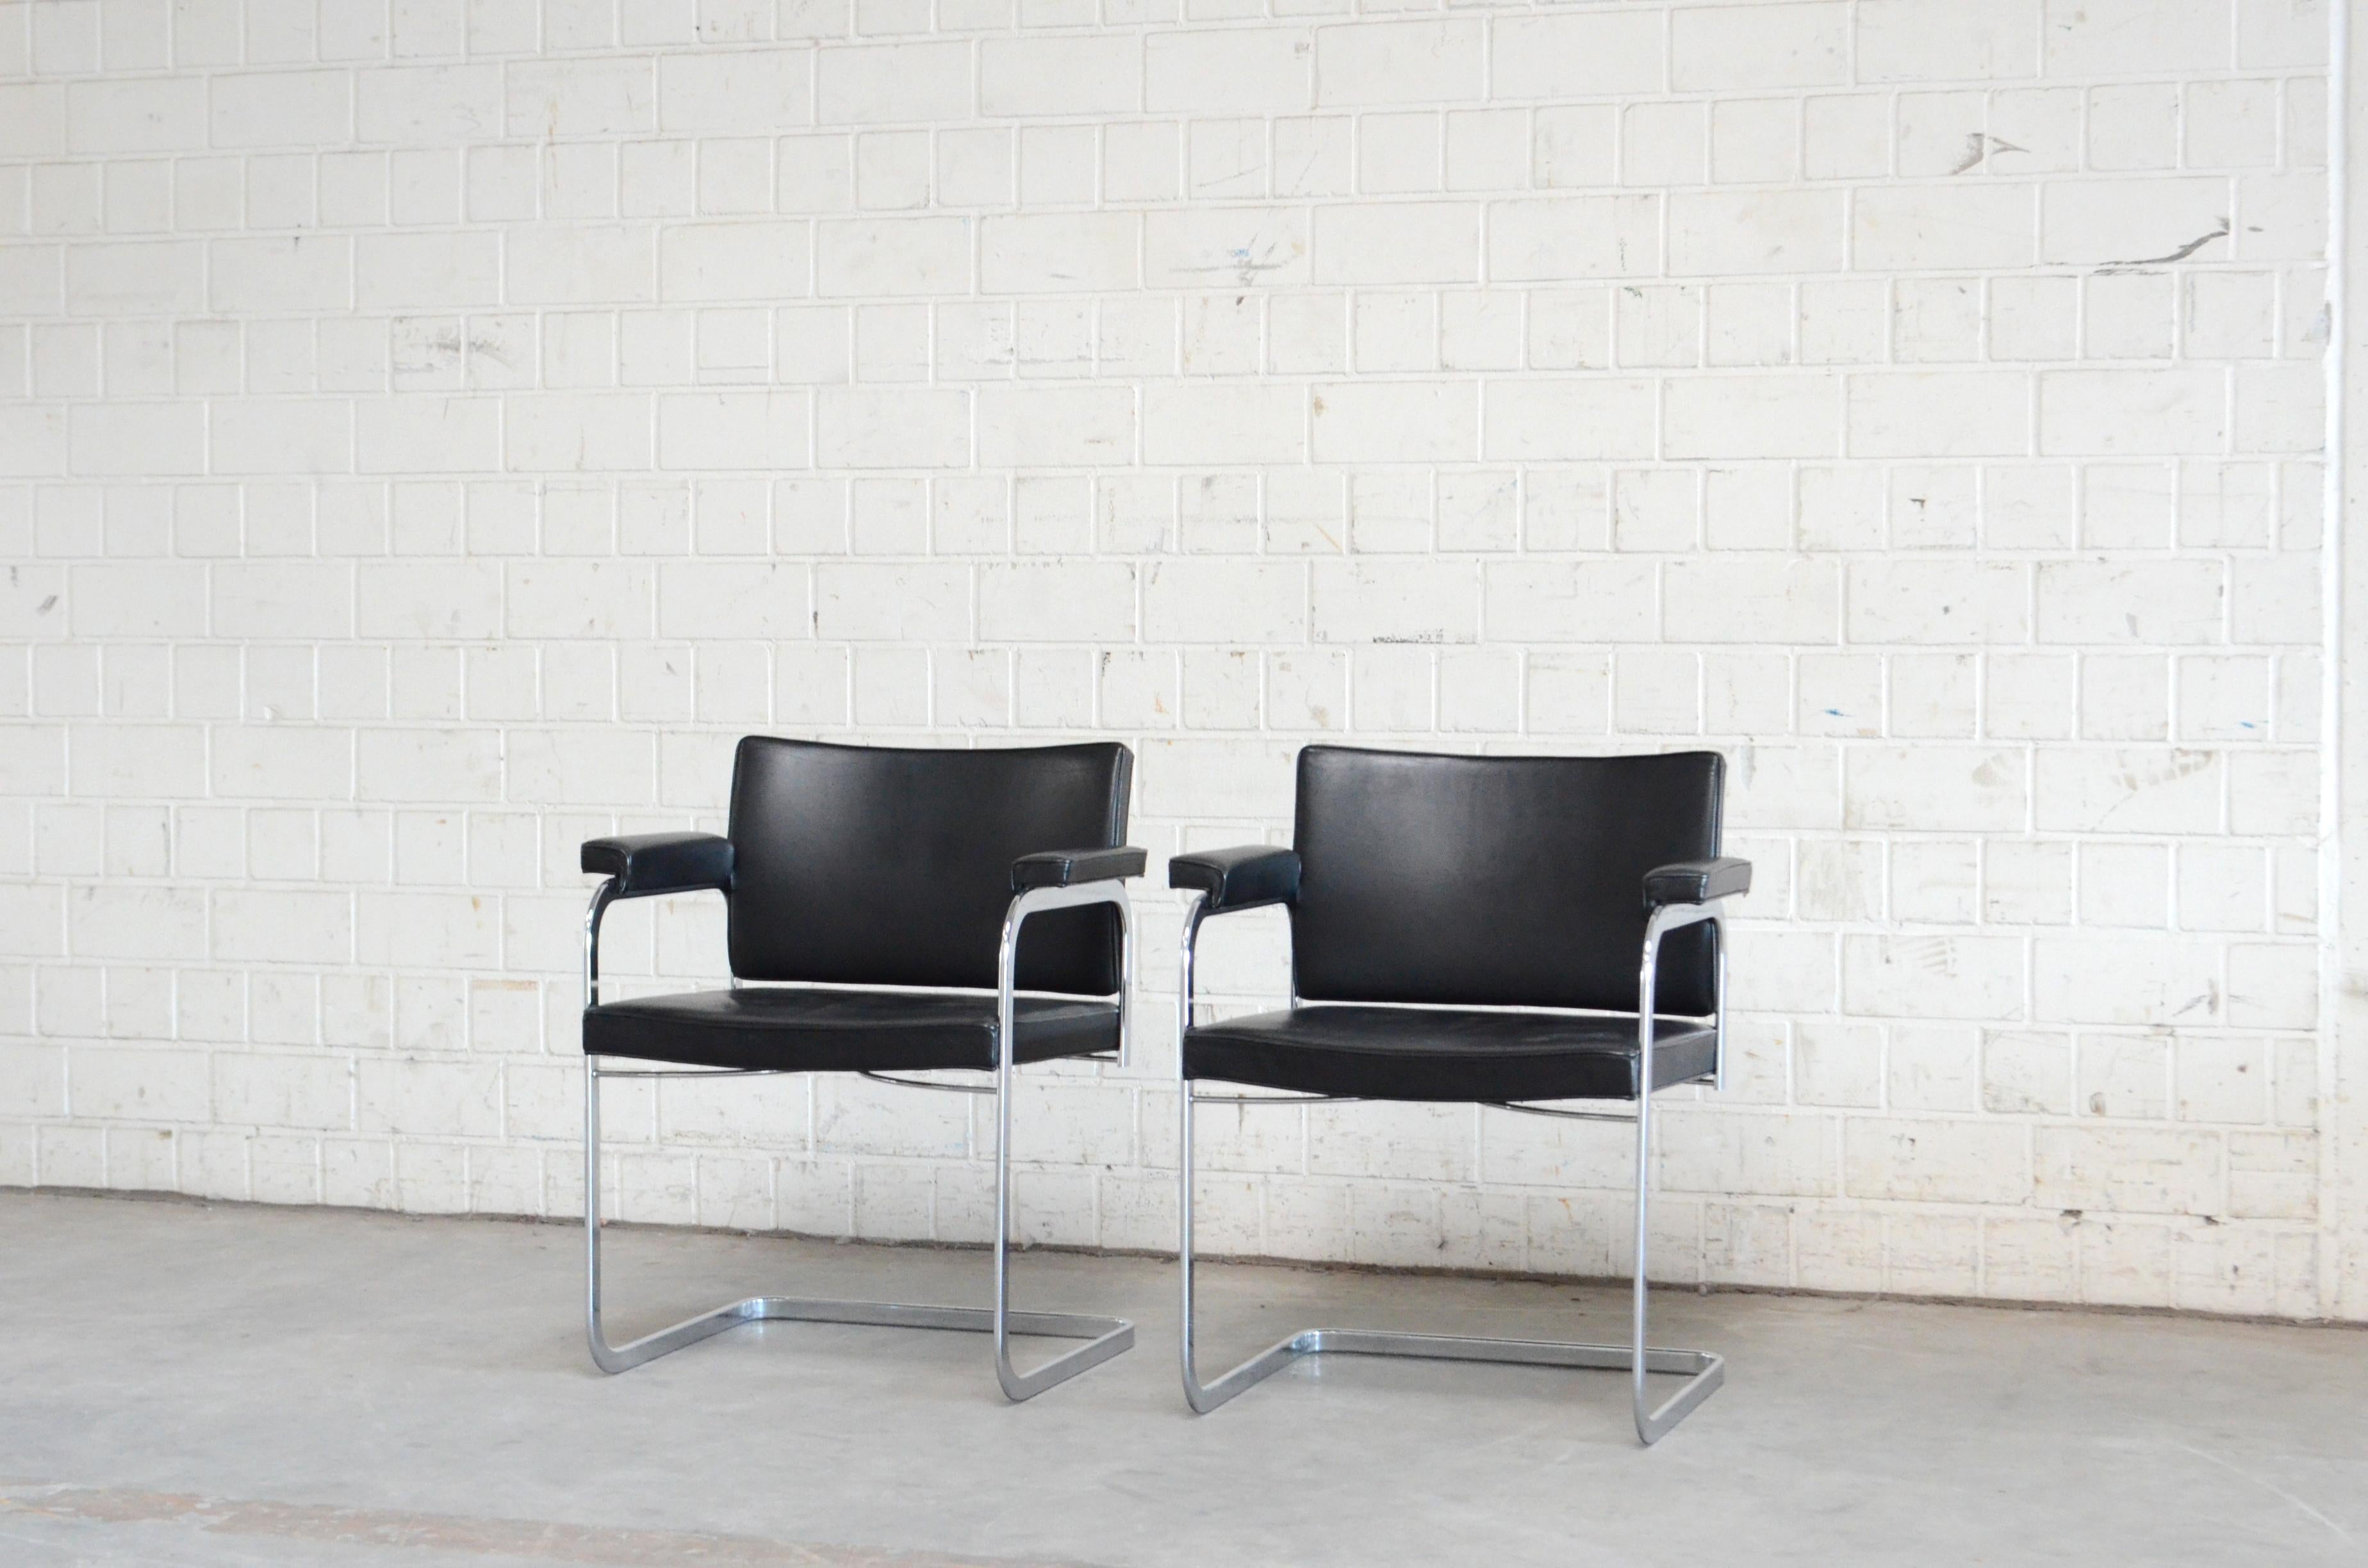 Fauteuil Robert Haussmann RH 305 conçu en 1957 et fabriqué par De Sede.
Cuir semianiline noir et cadre en acier chromé.
Il s'agit d'une chaise classique de conception suisse.
Excellent état.
Prix pour 1 chaise
Nous avons 2 chaises en magasin.